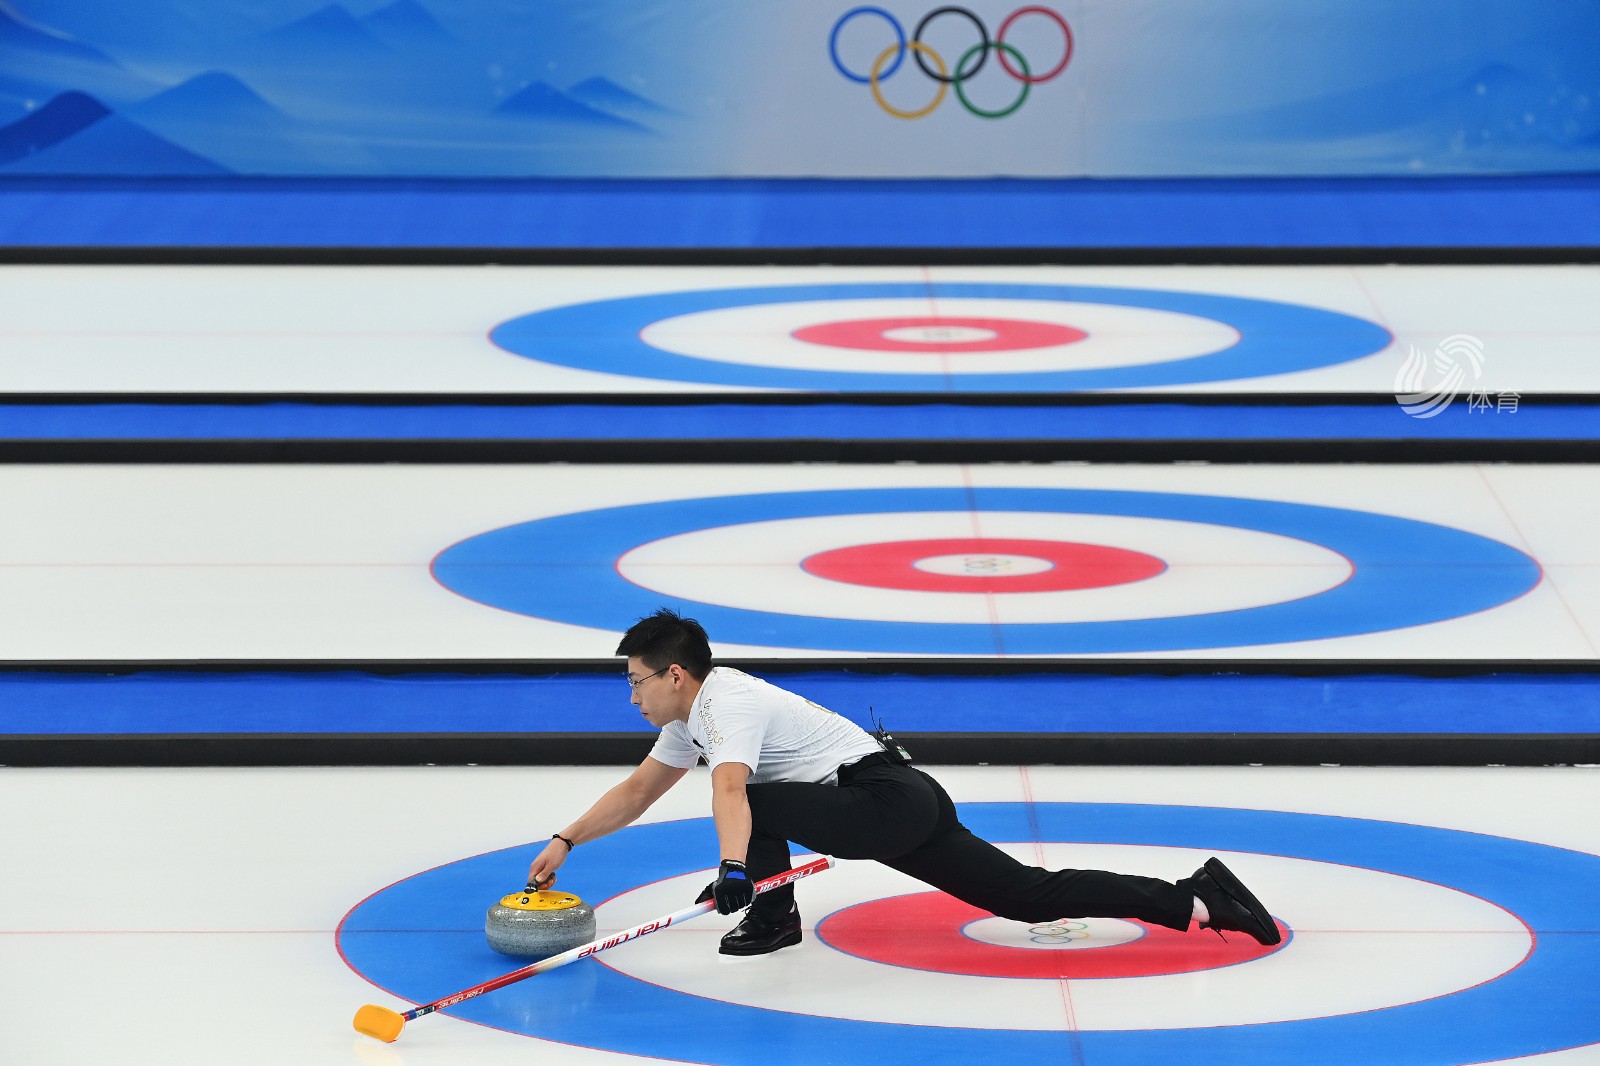 冰壶混双循环赛第十轮中国队56惜败英国队